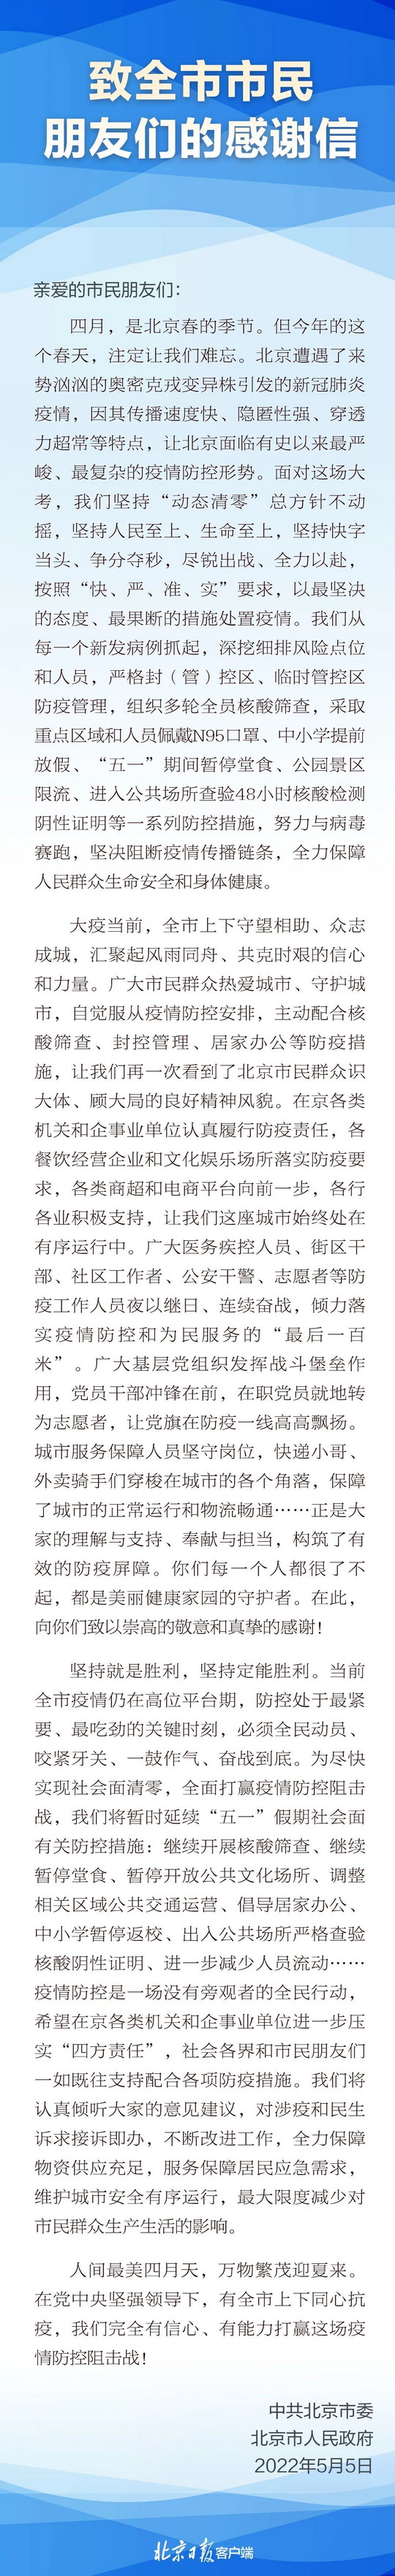 北京市委、市政府致全市市民朋友们的感谢信